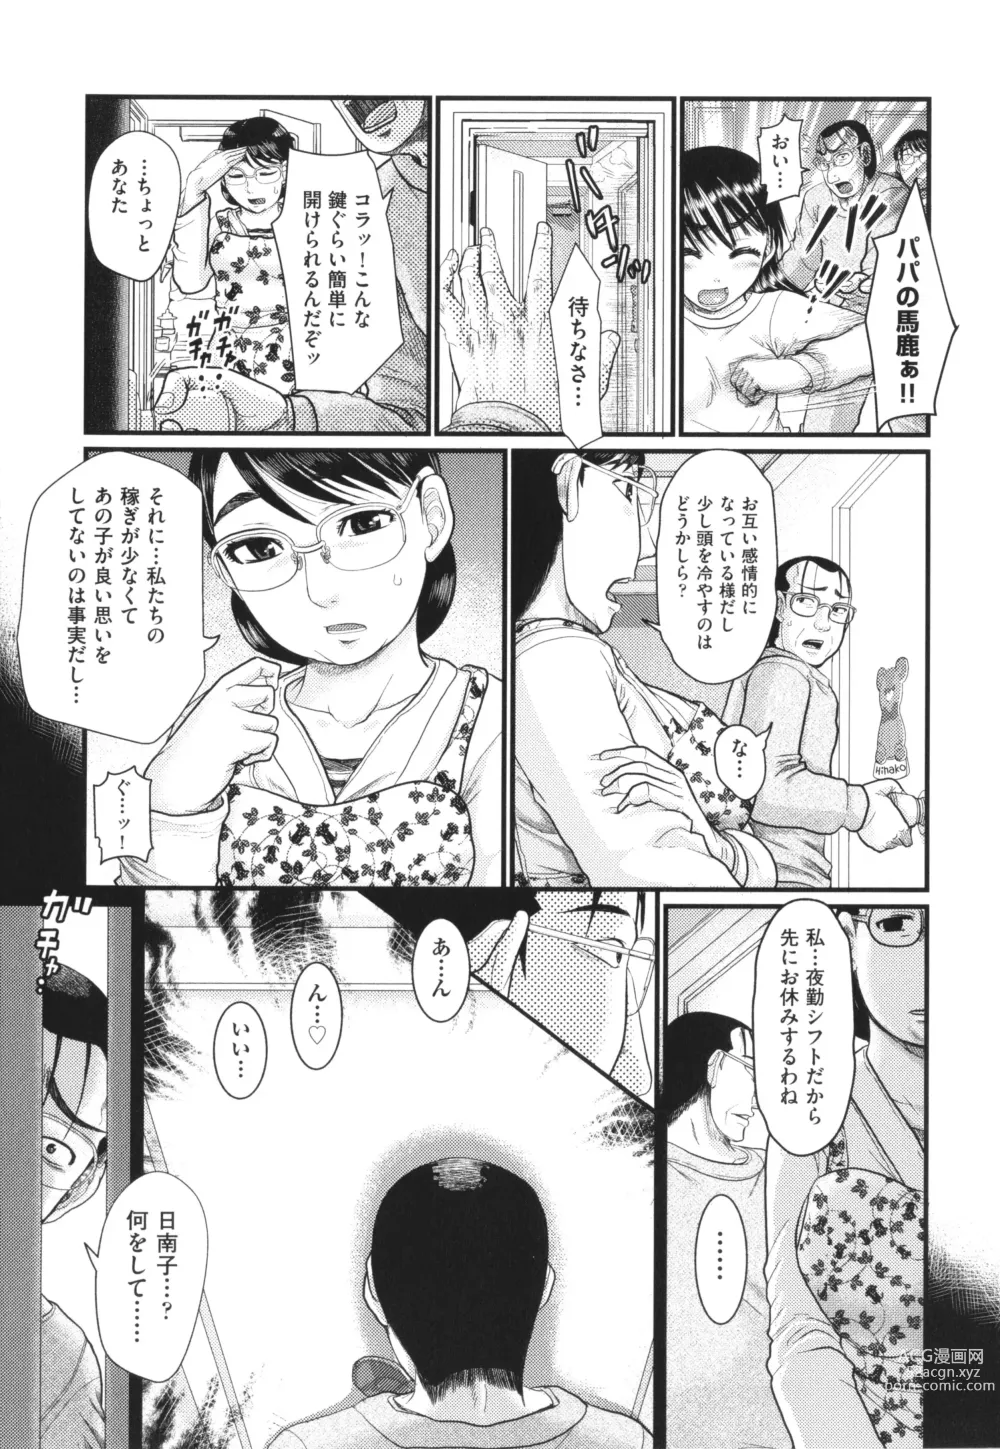 Page 8 of manga Akarui Kazoku Kyoujoku